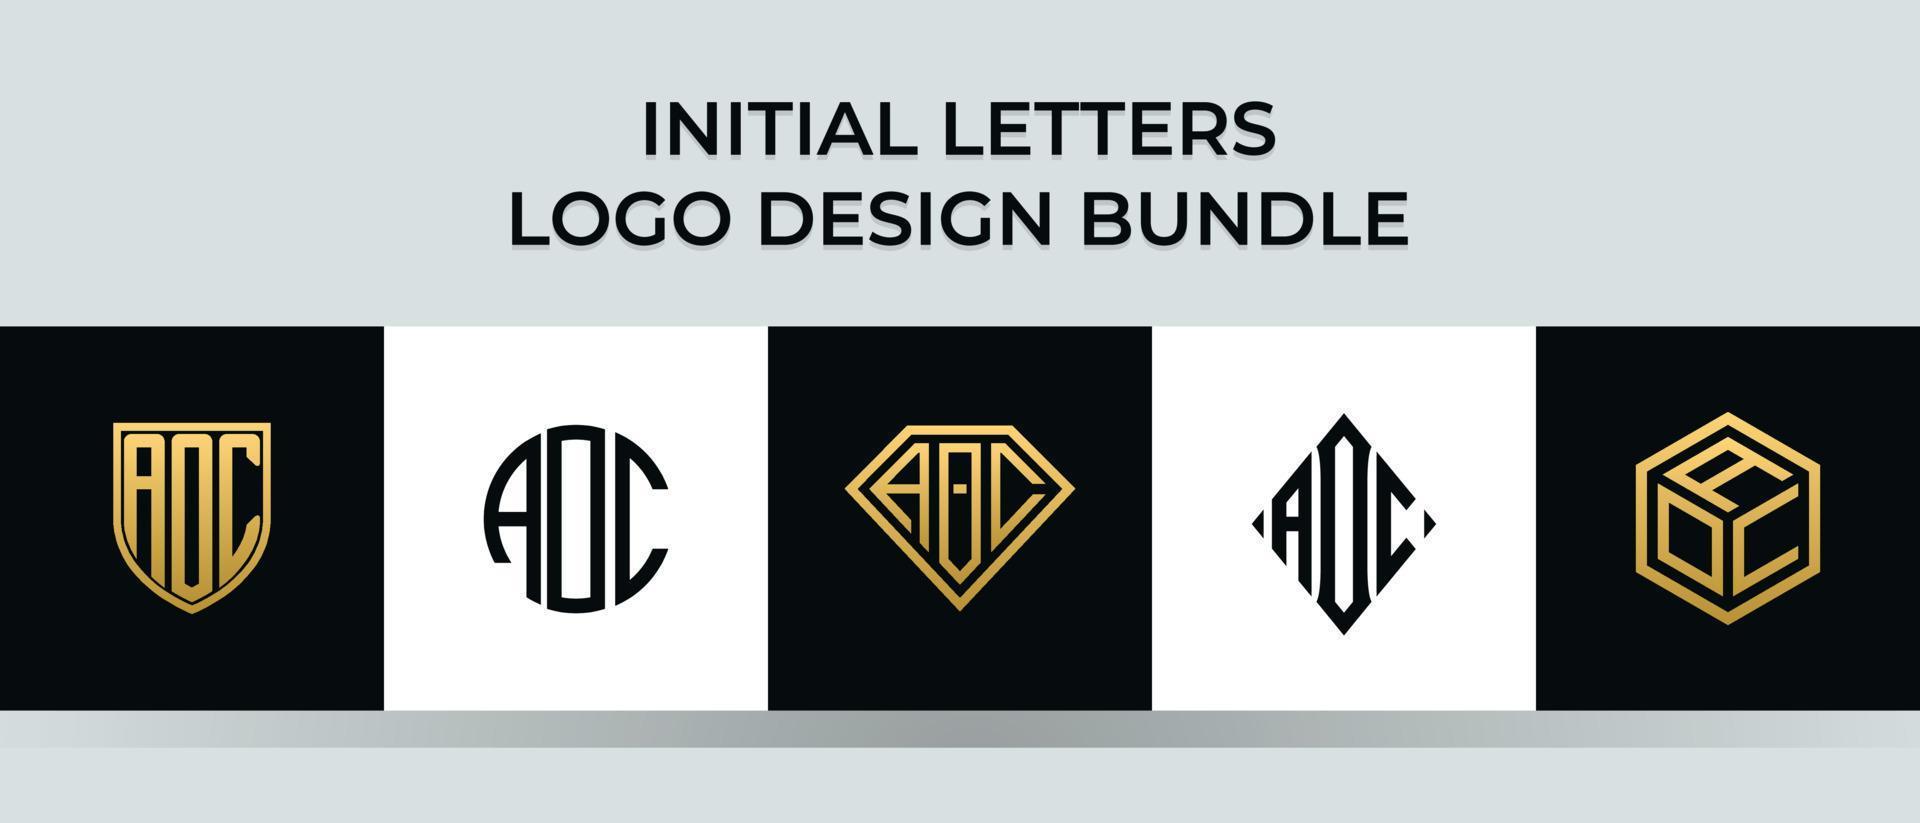 beginletters aoc logo ontwerpen bundel vector